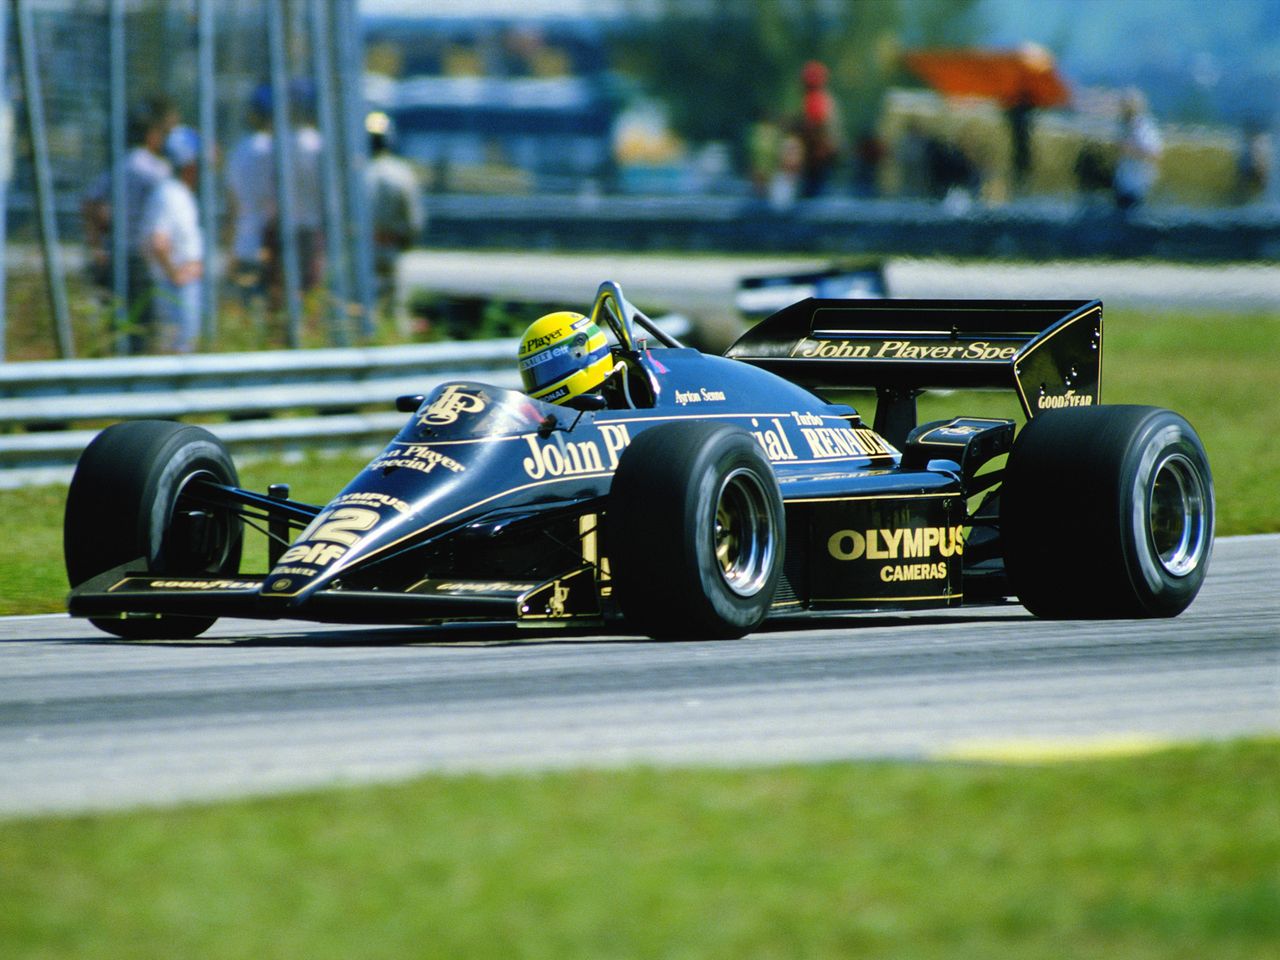 Czarny był też podstawowym kolorem bolidów Formuły 1 Lotusa, w których startował, m.in. Ayrton Senna.